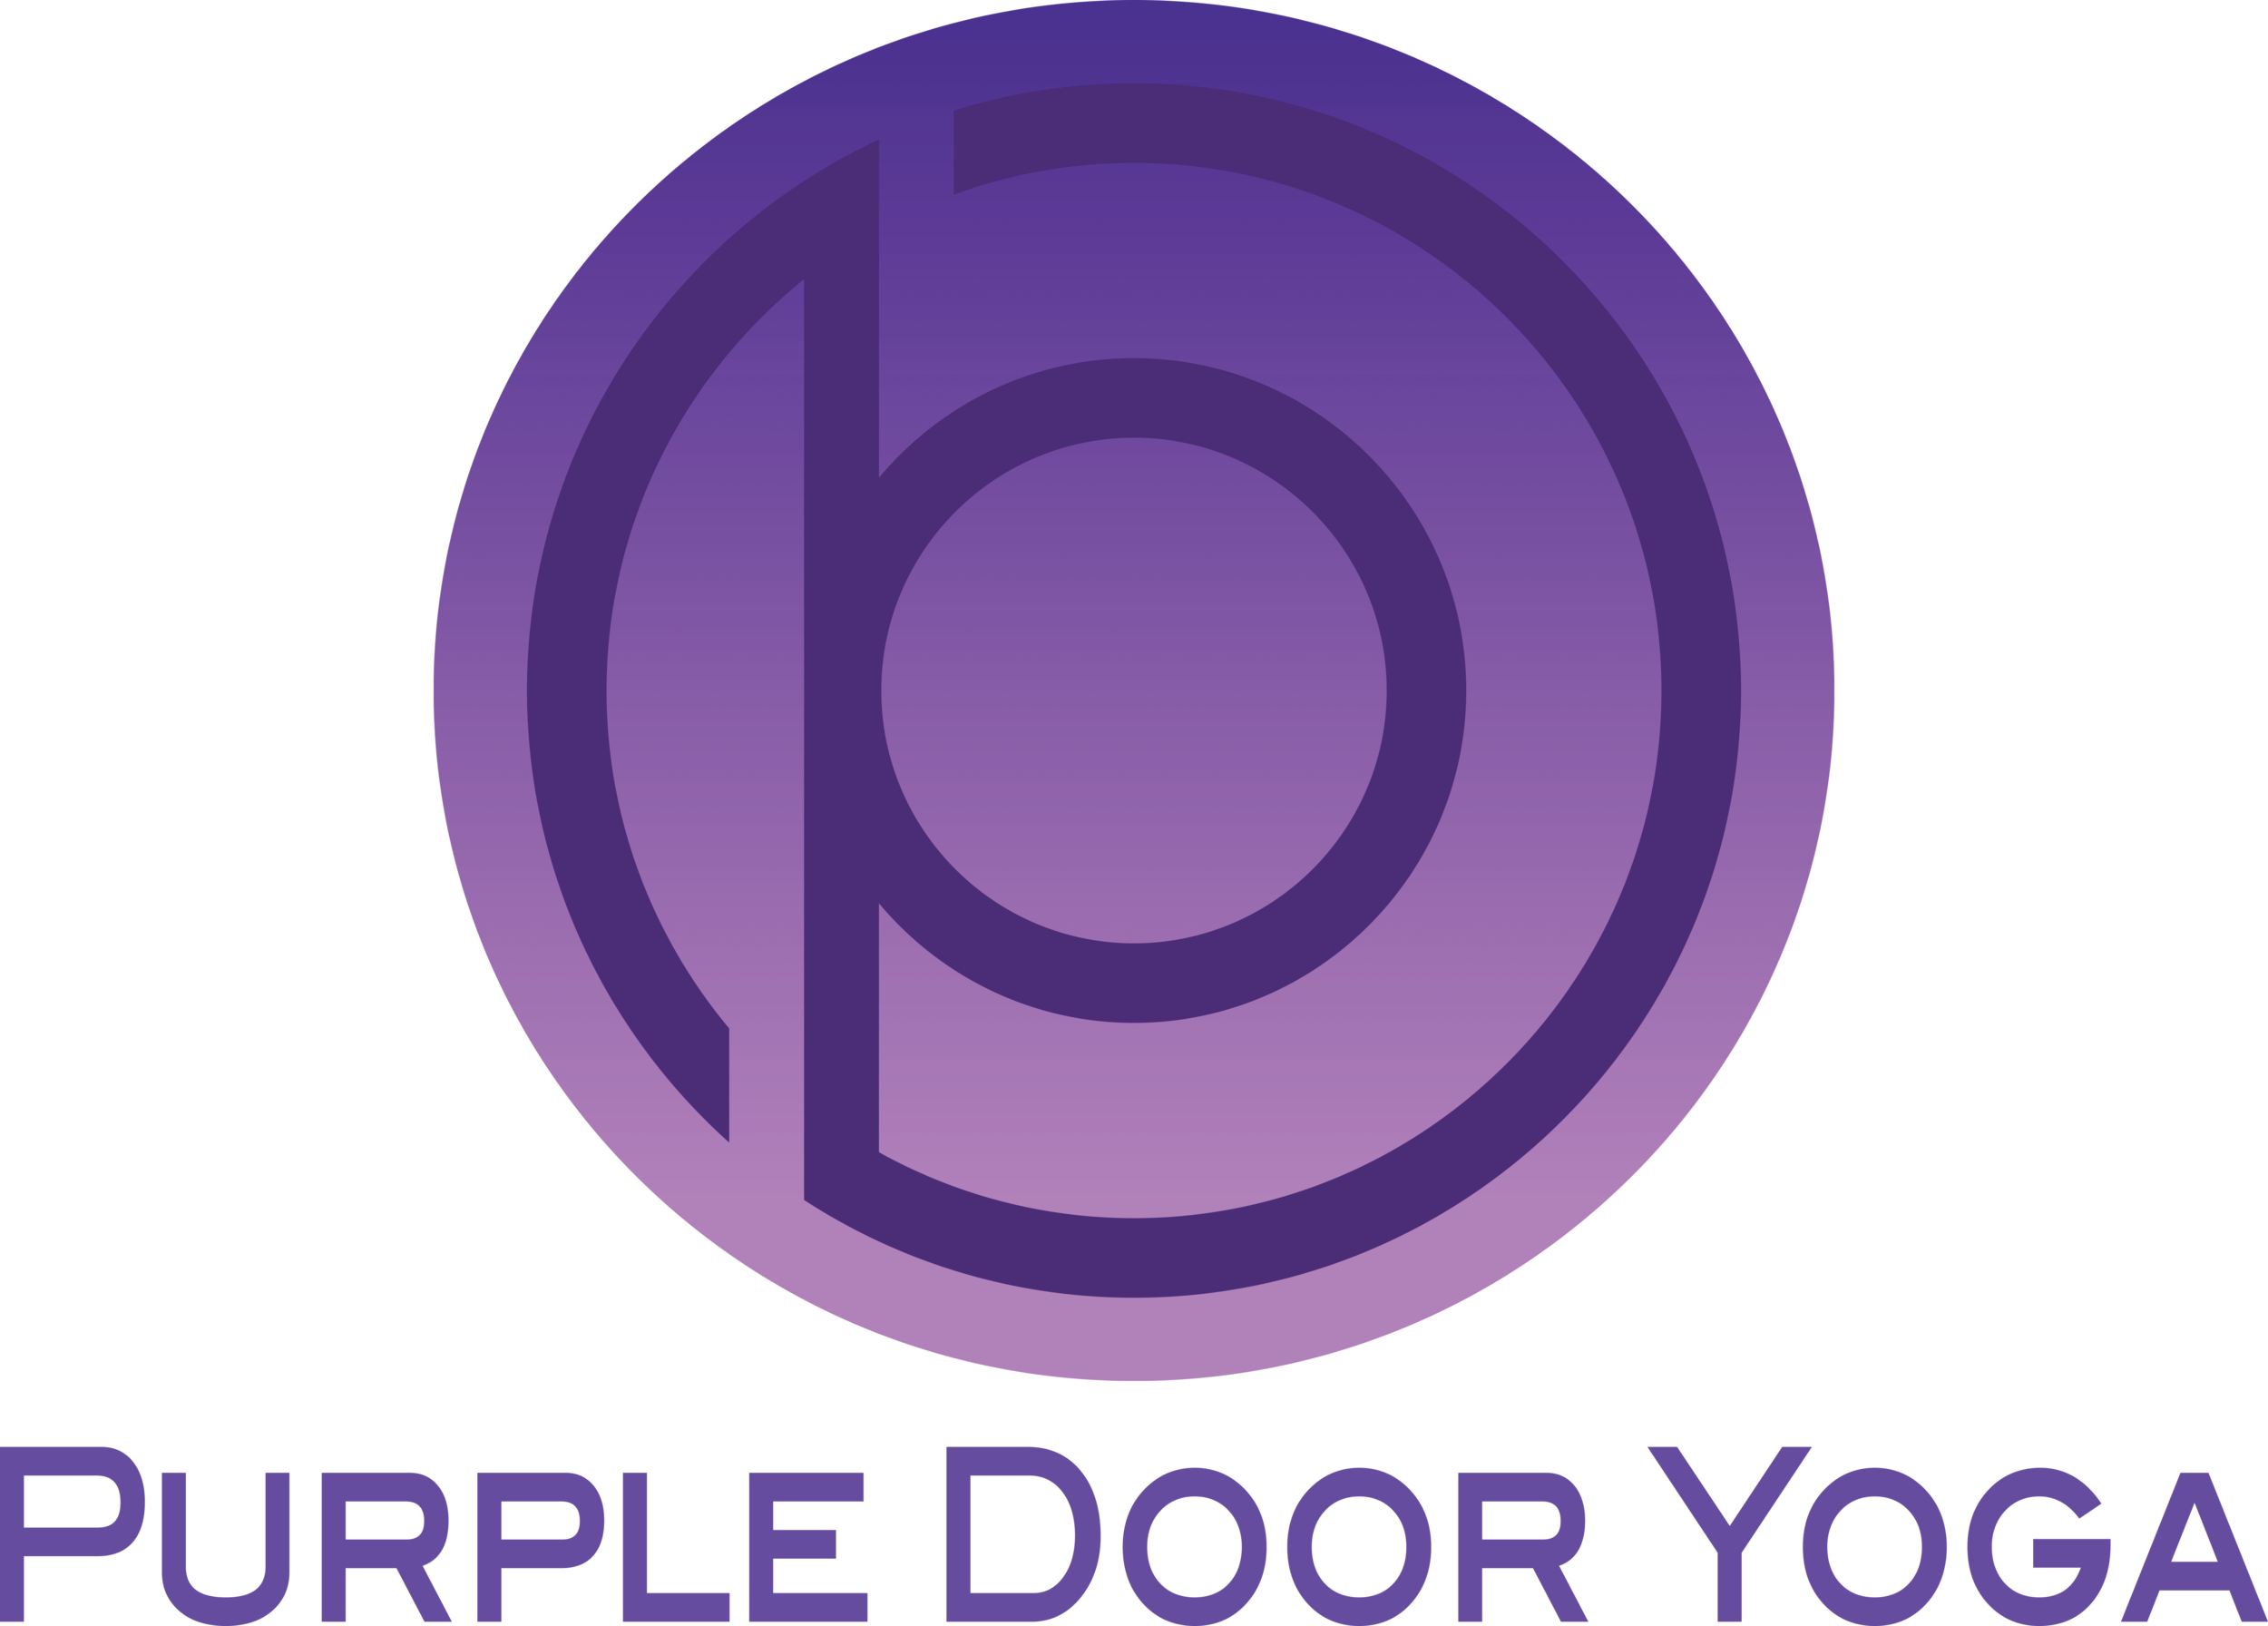 Purple Door Yoga